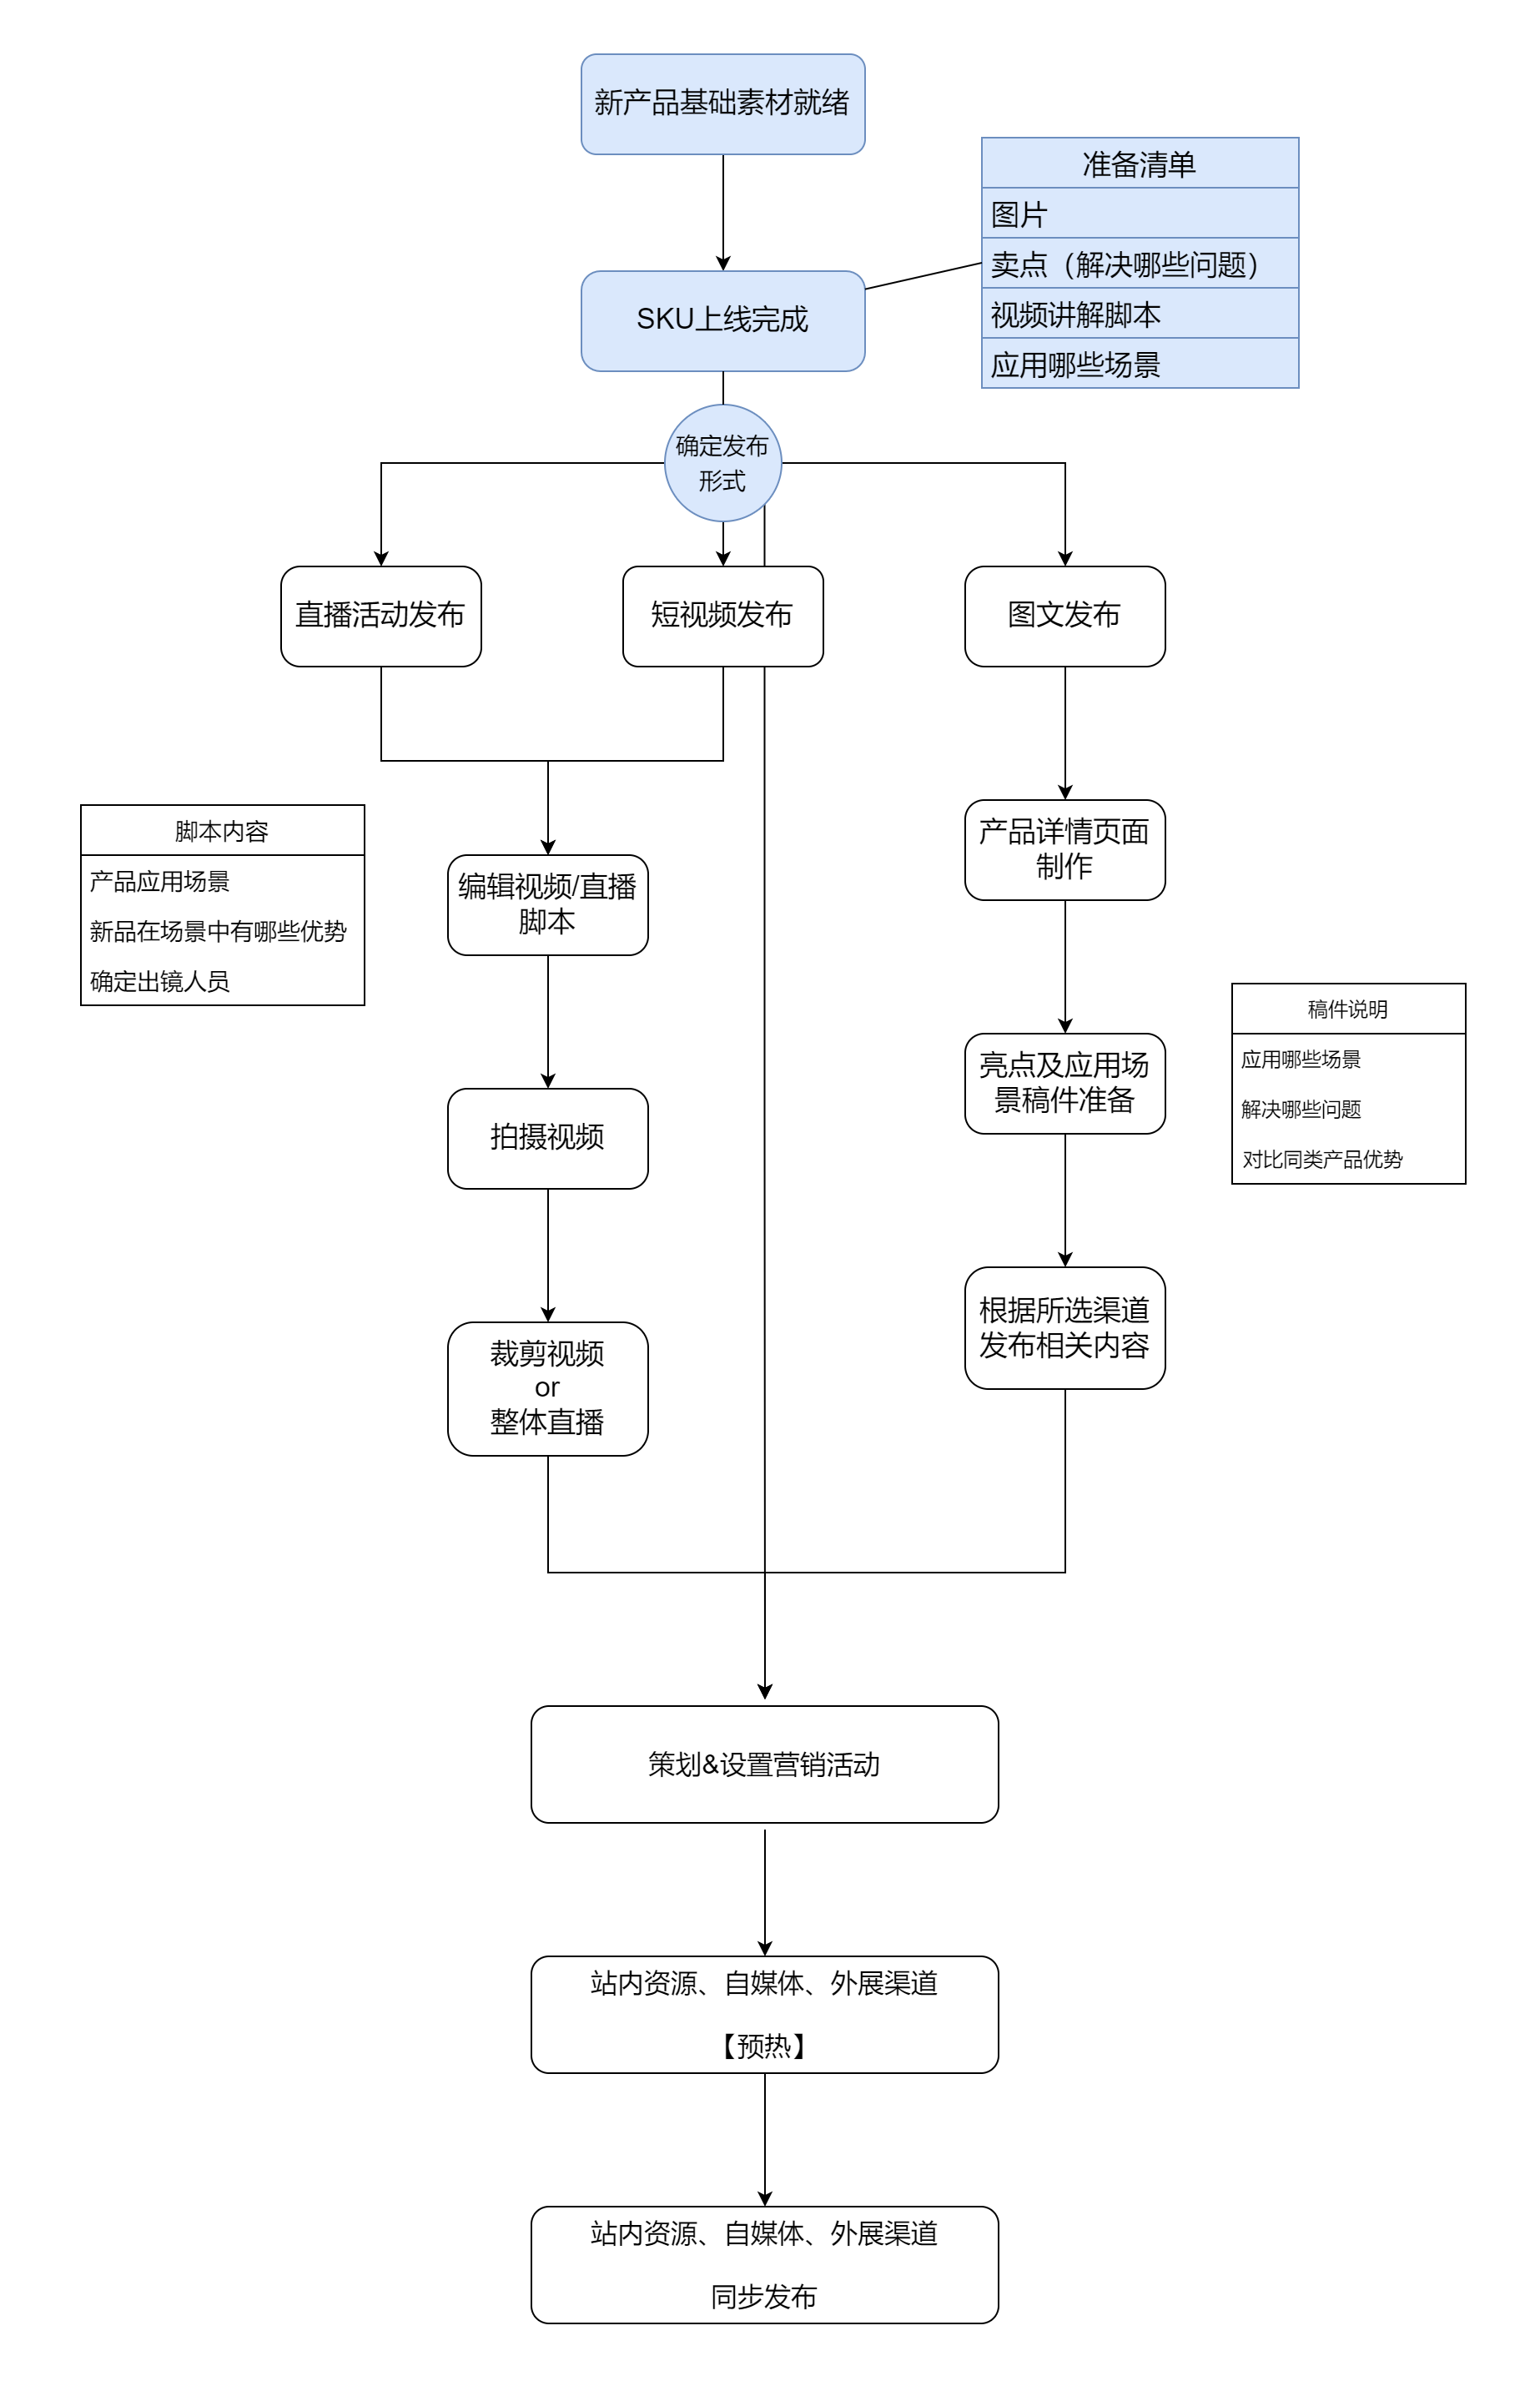 产品发布流程图-2.png